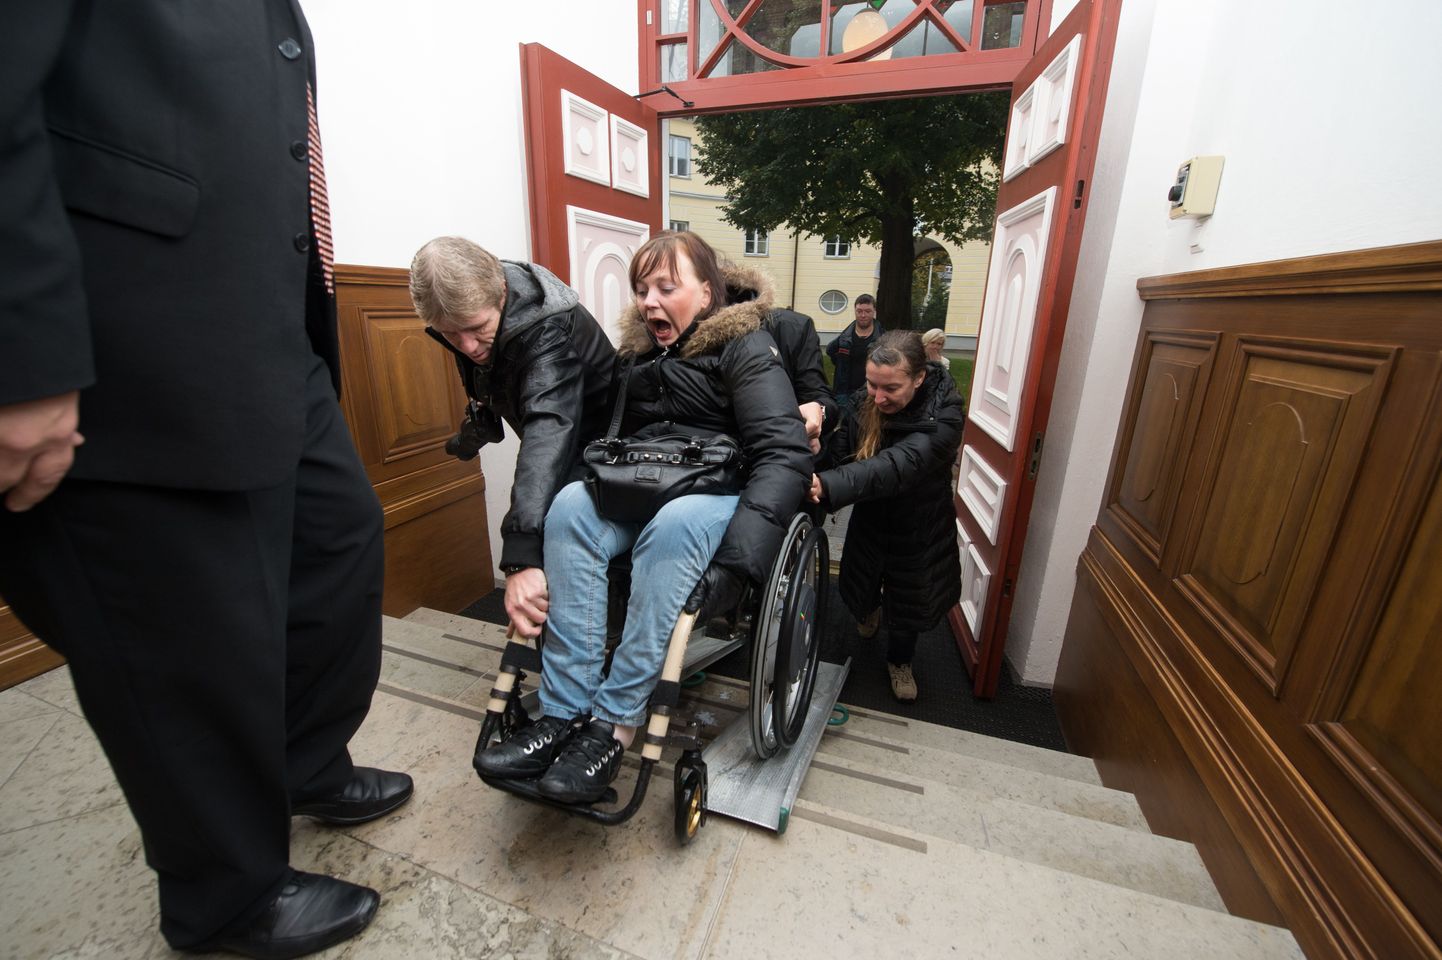 Tiia Sihver pidi end abiliste toel 20. oktoobril Stenbocki maja treppidest üles vinnama, et anda peaminister Taavi Rõivasele üle puuetega inimeste petitsioon.